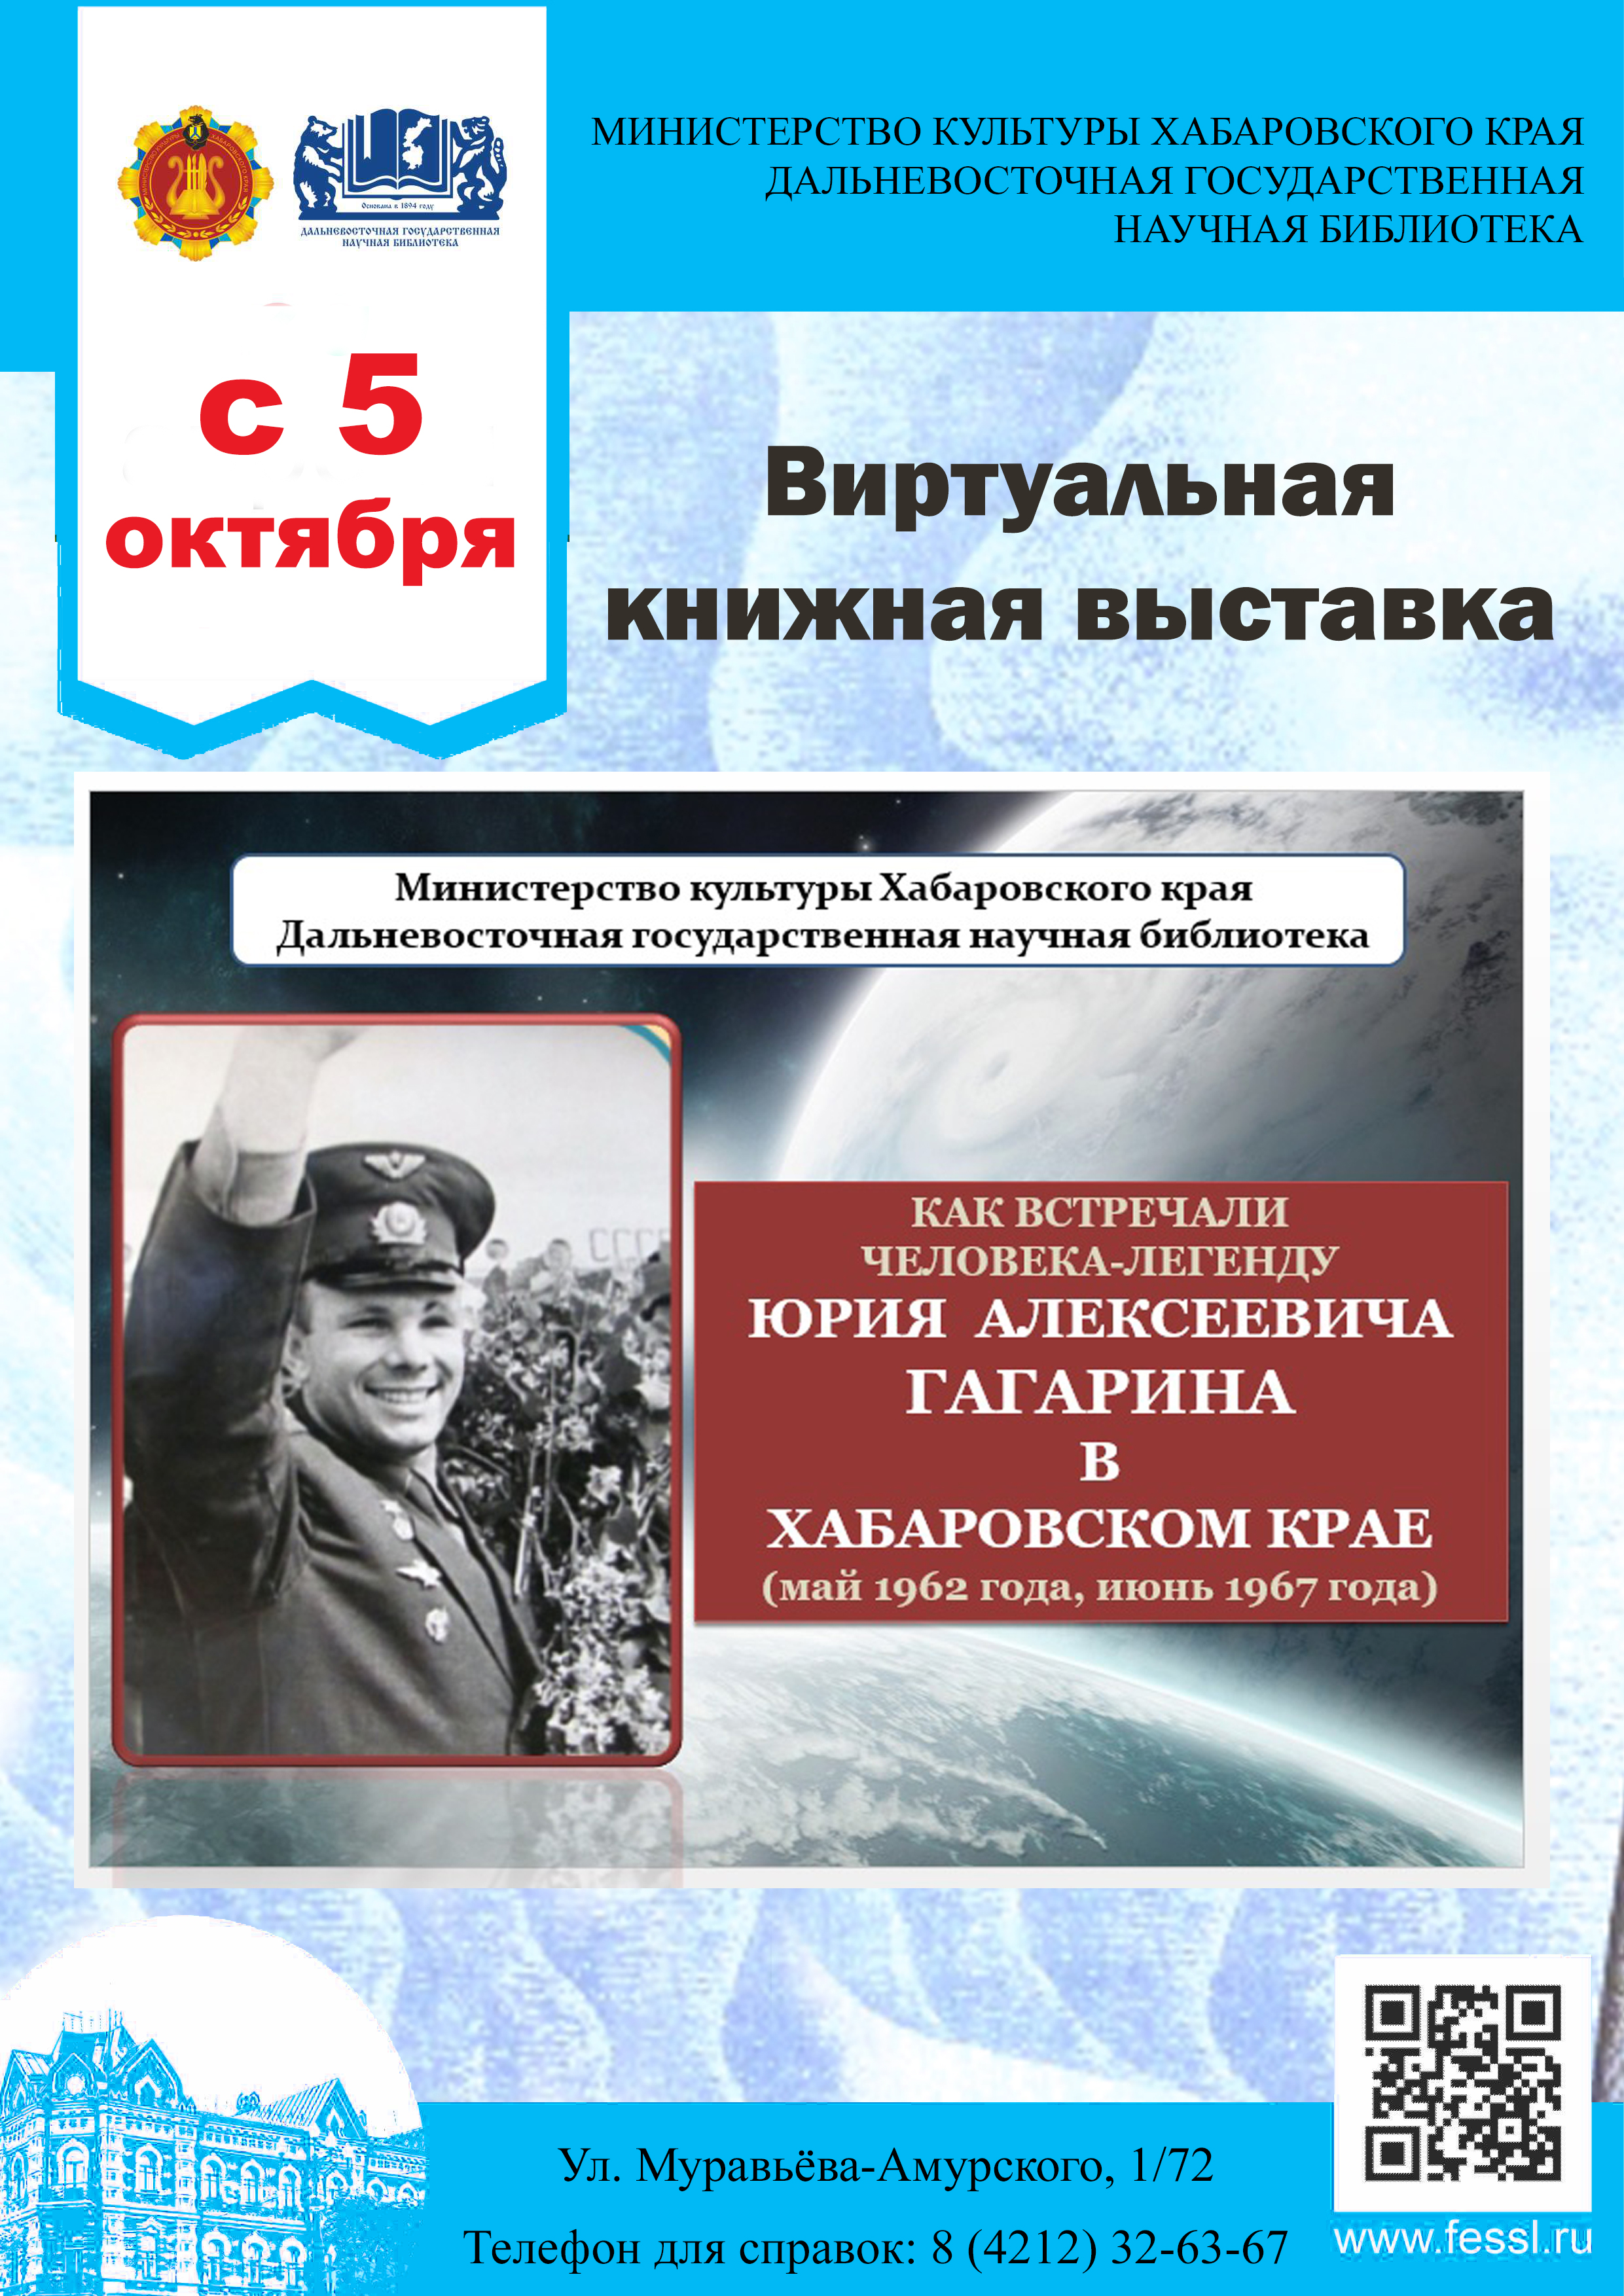 К 60-летию визита первого космонавта Ю. А. Гагарина в Хабаровск